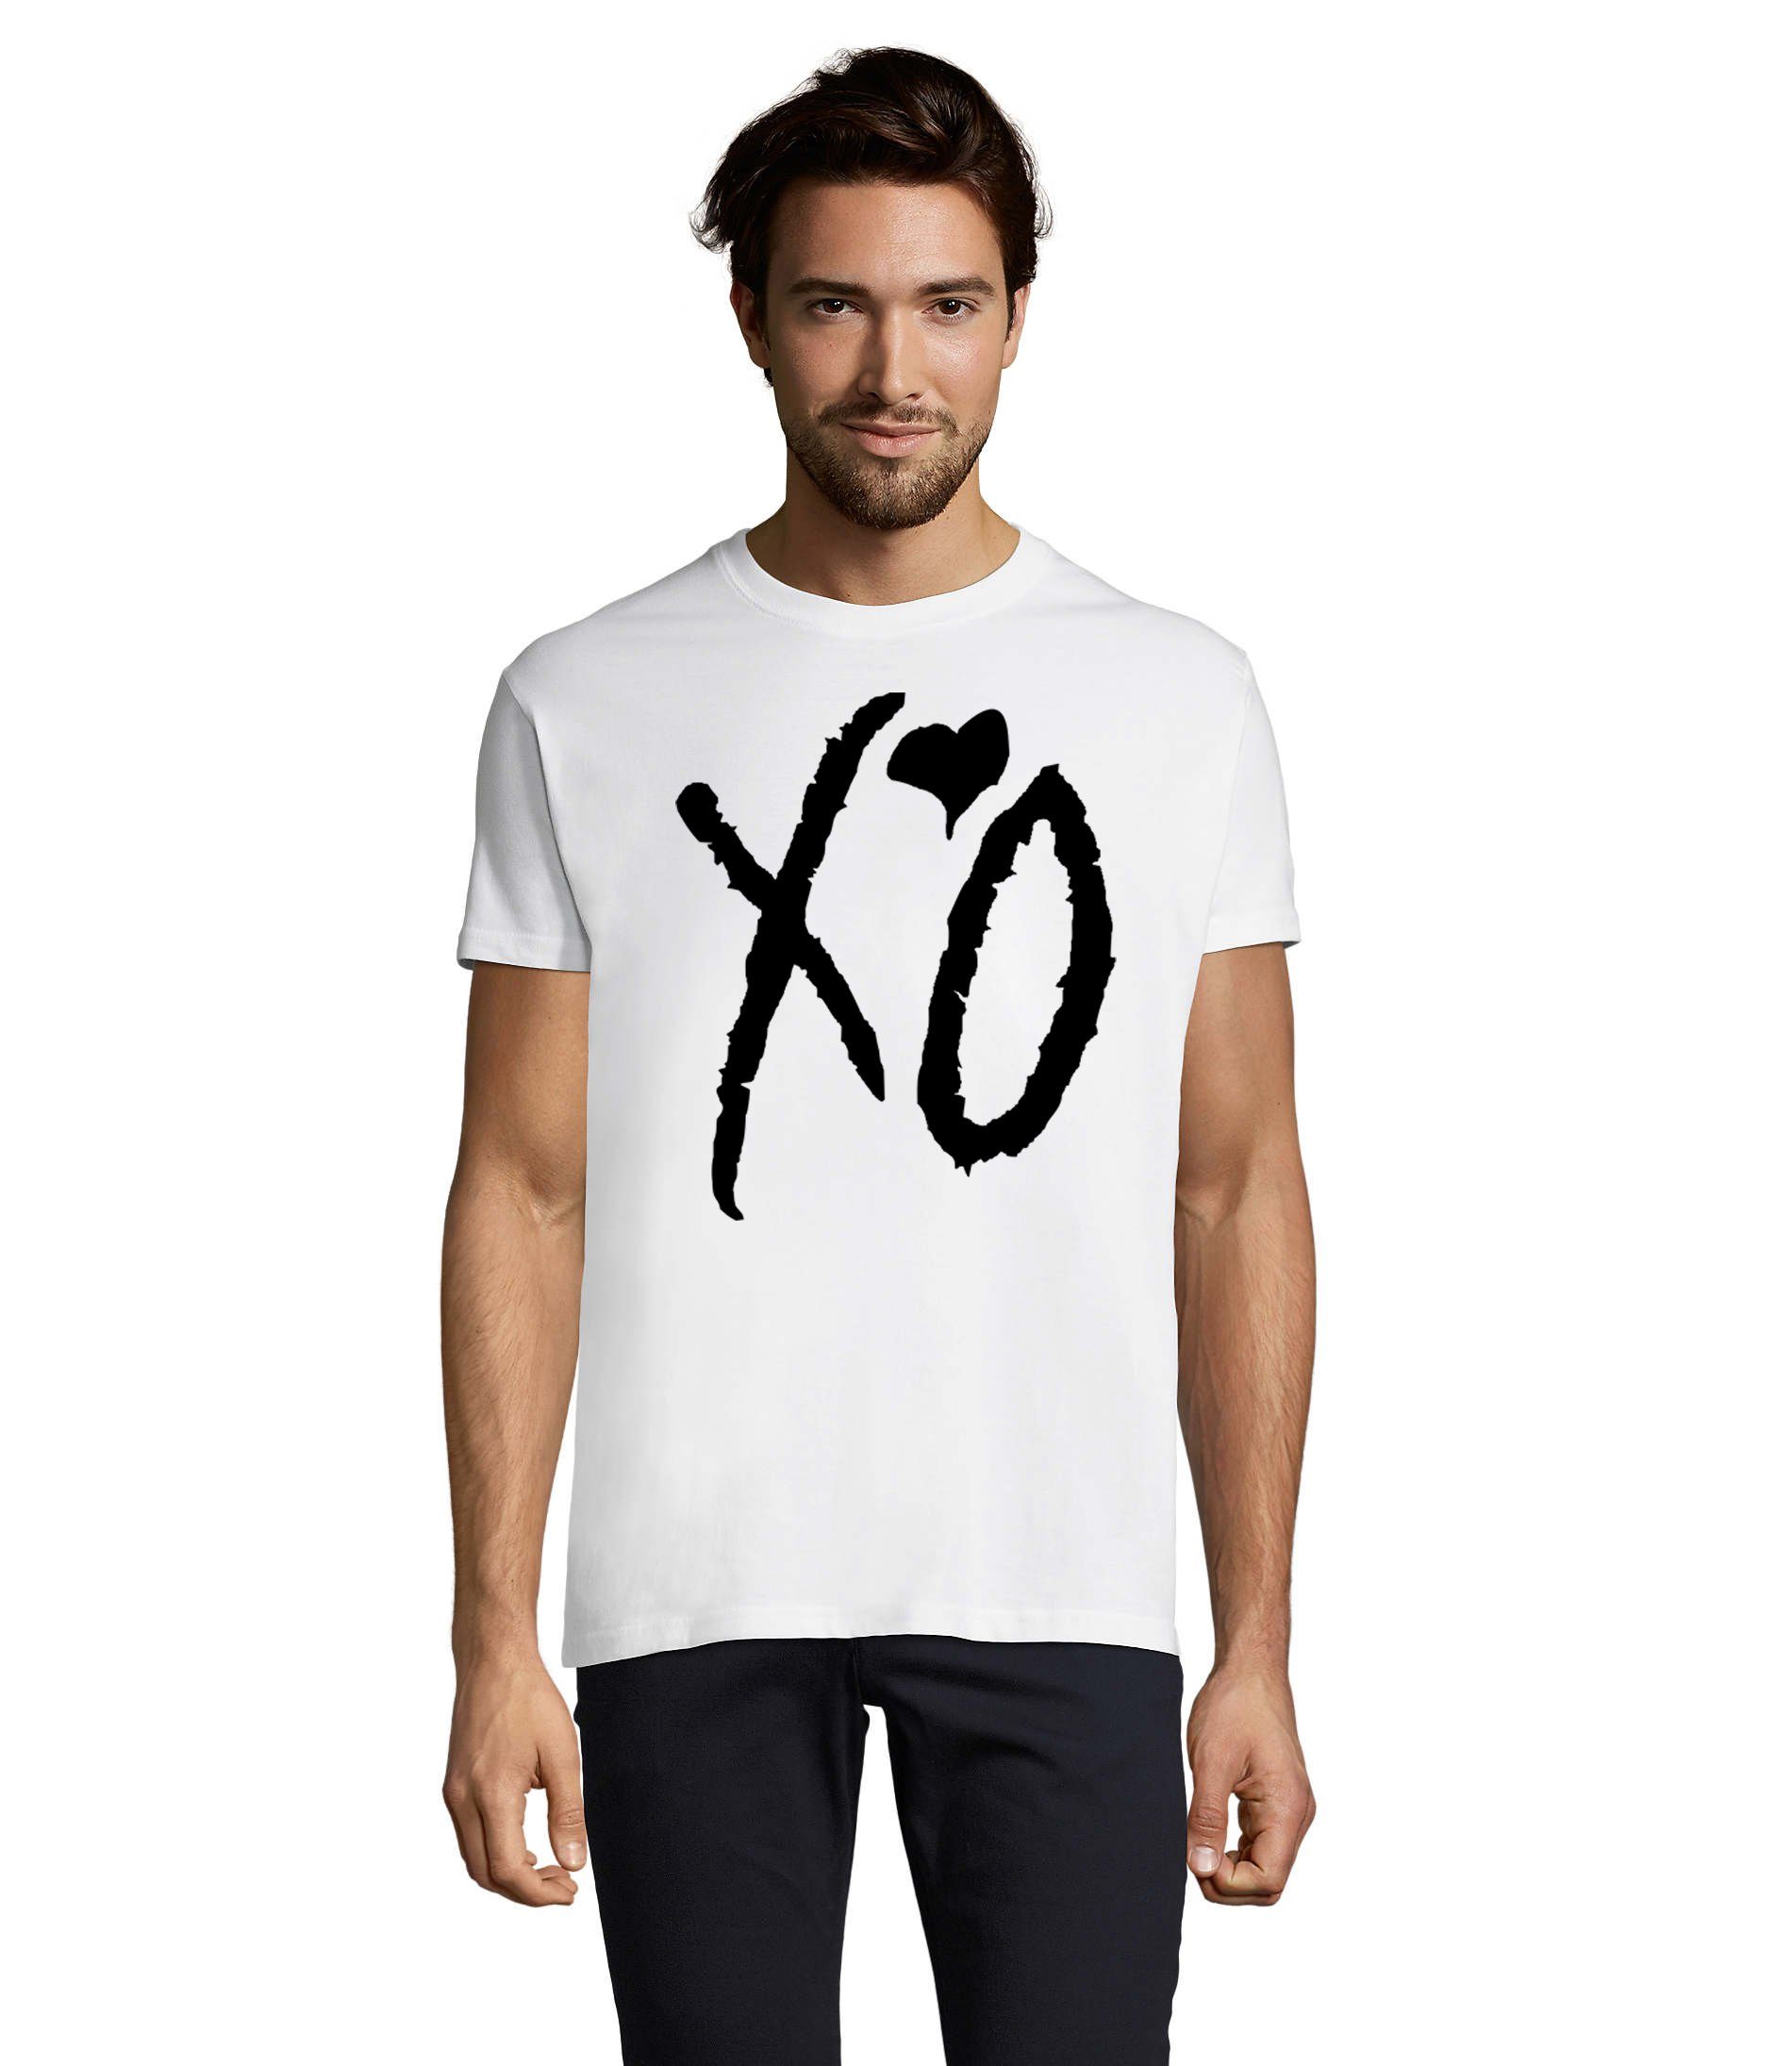 Fan Hugs Starboy Kisses XO Blondie Weeknd Weiß & Musik Festival Brownie Herren T-Shirt